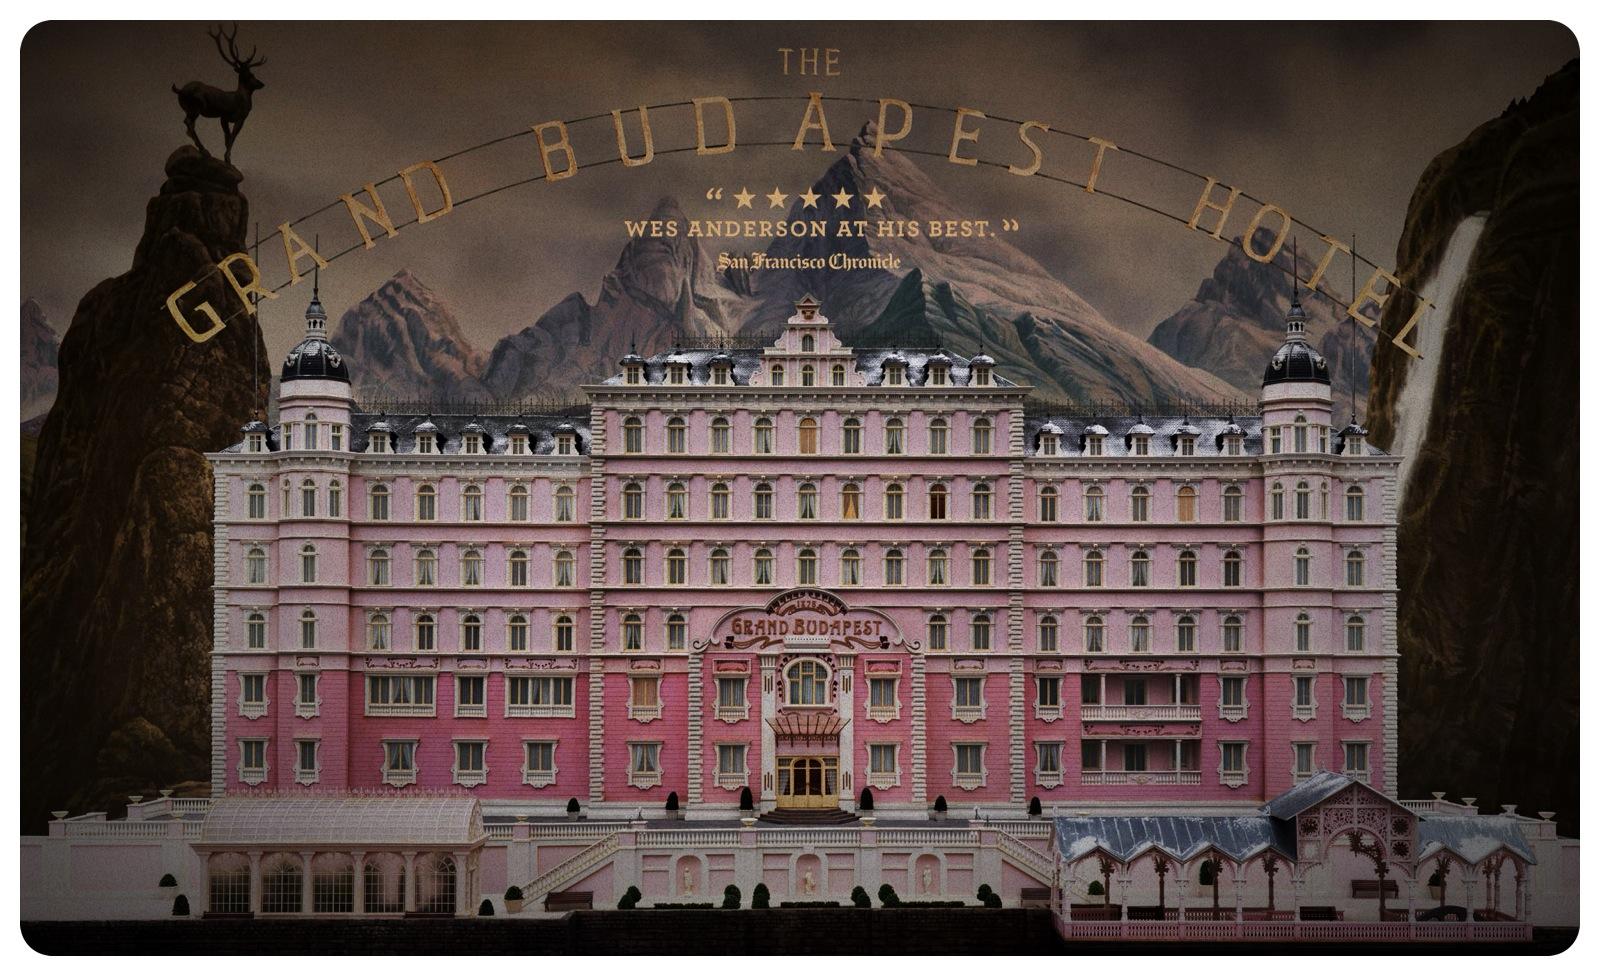 THE GRAND bUDAPEST HOTEL فيلم - أفلام كوميدية